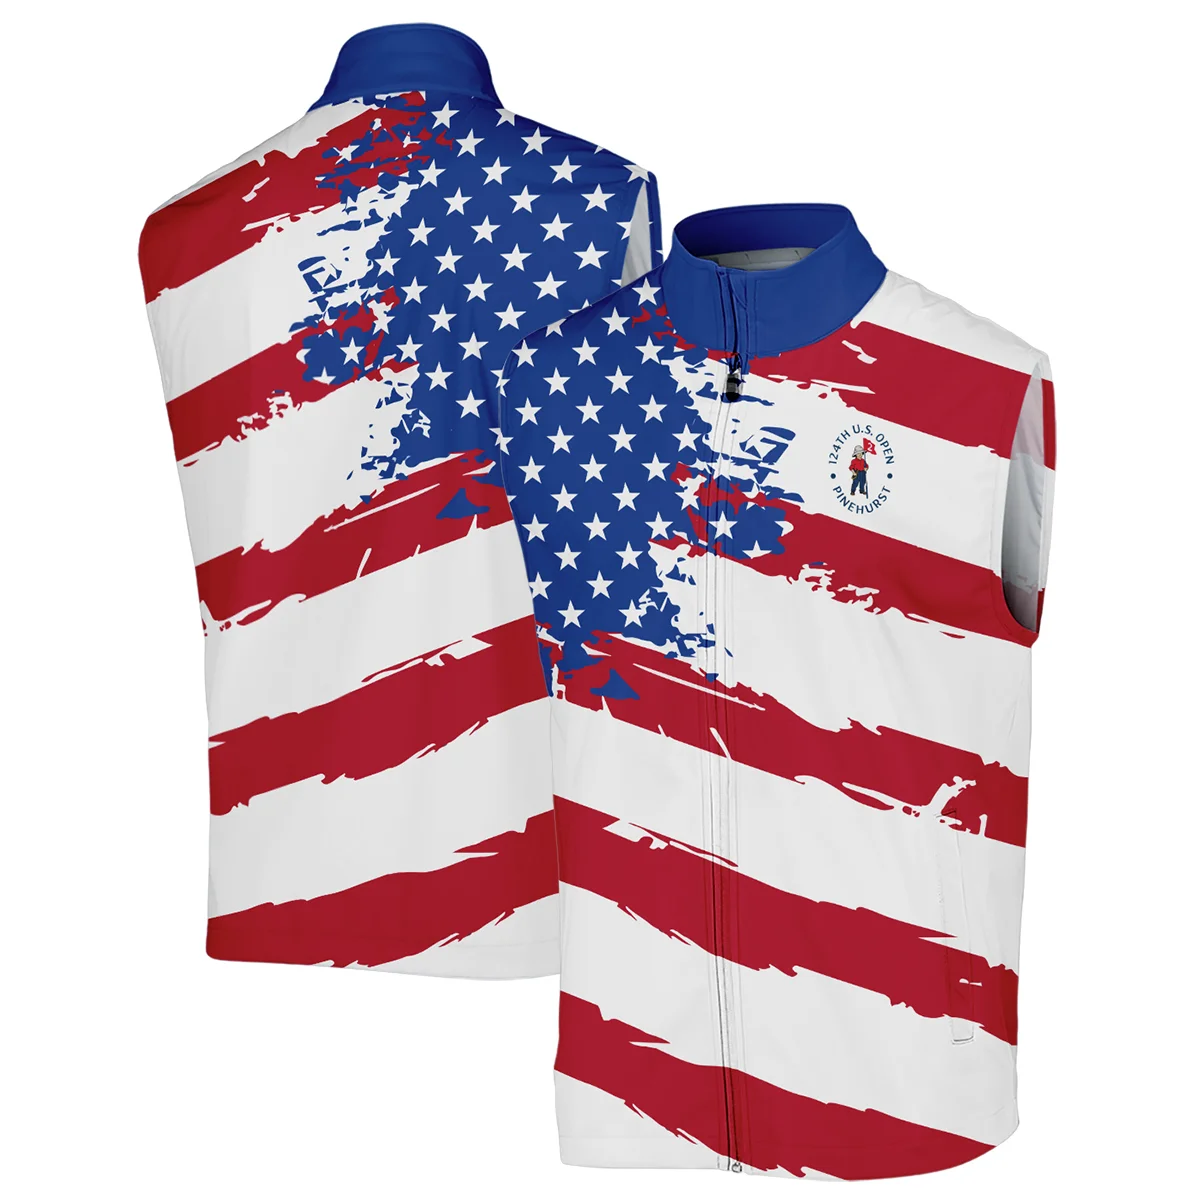 Ping US Flag Blue Red Stars 124th U.S. Open Pinehurst Sleeveless Jacket Style Classic Sleeveless Jacket